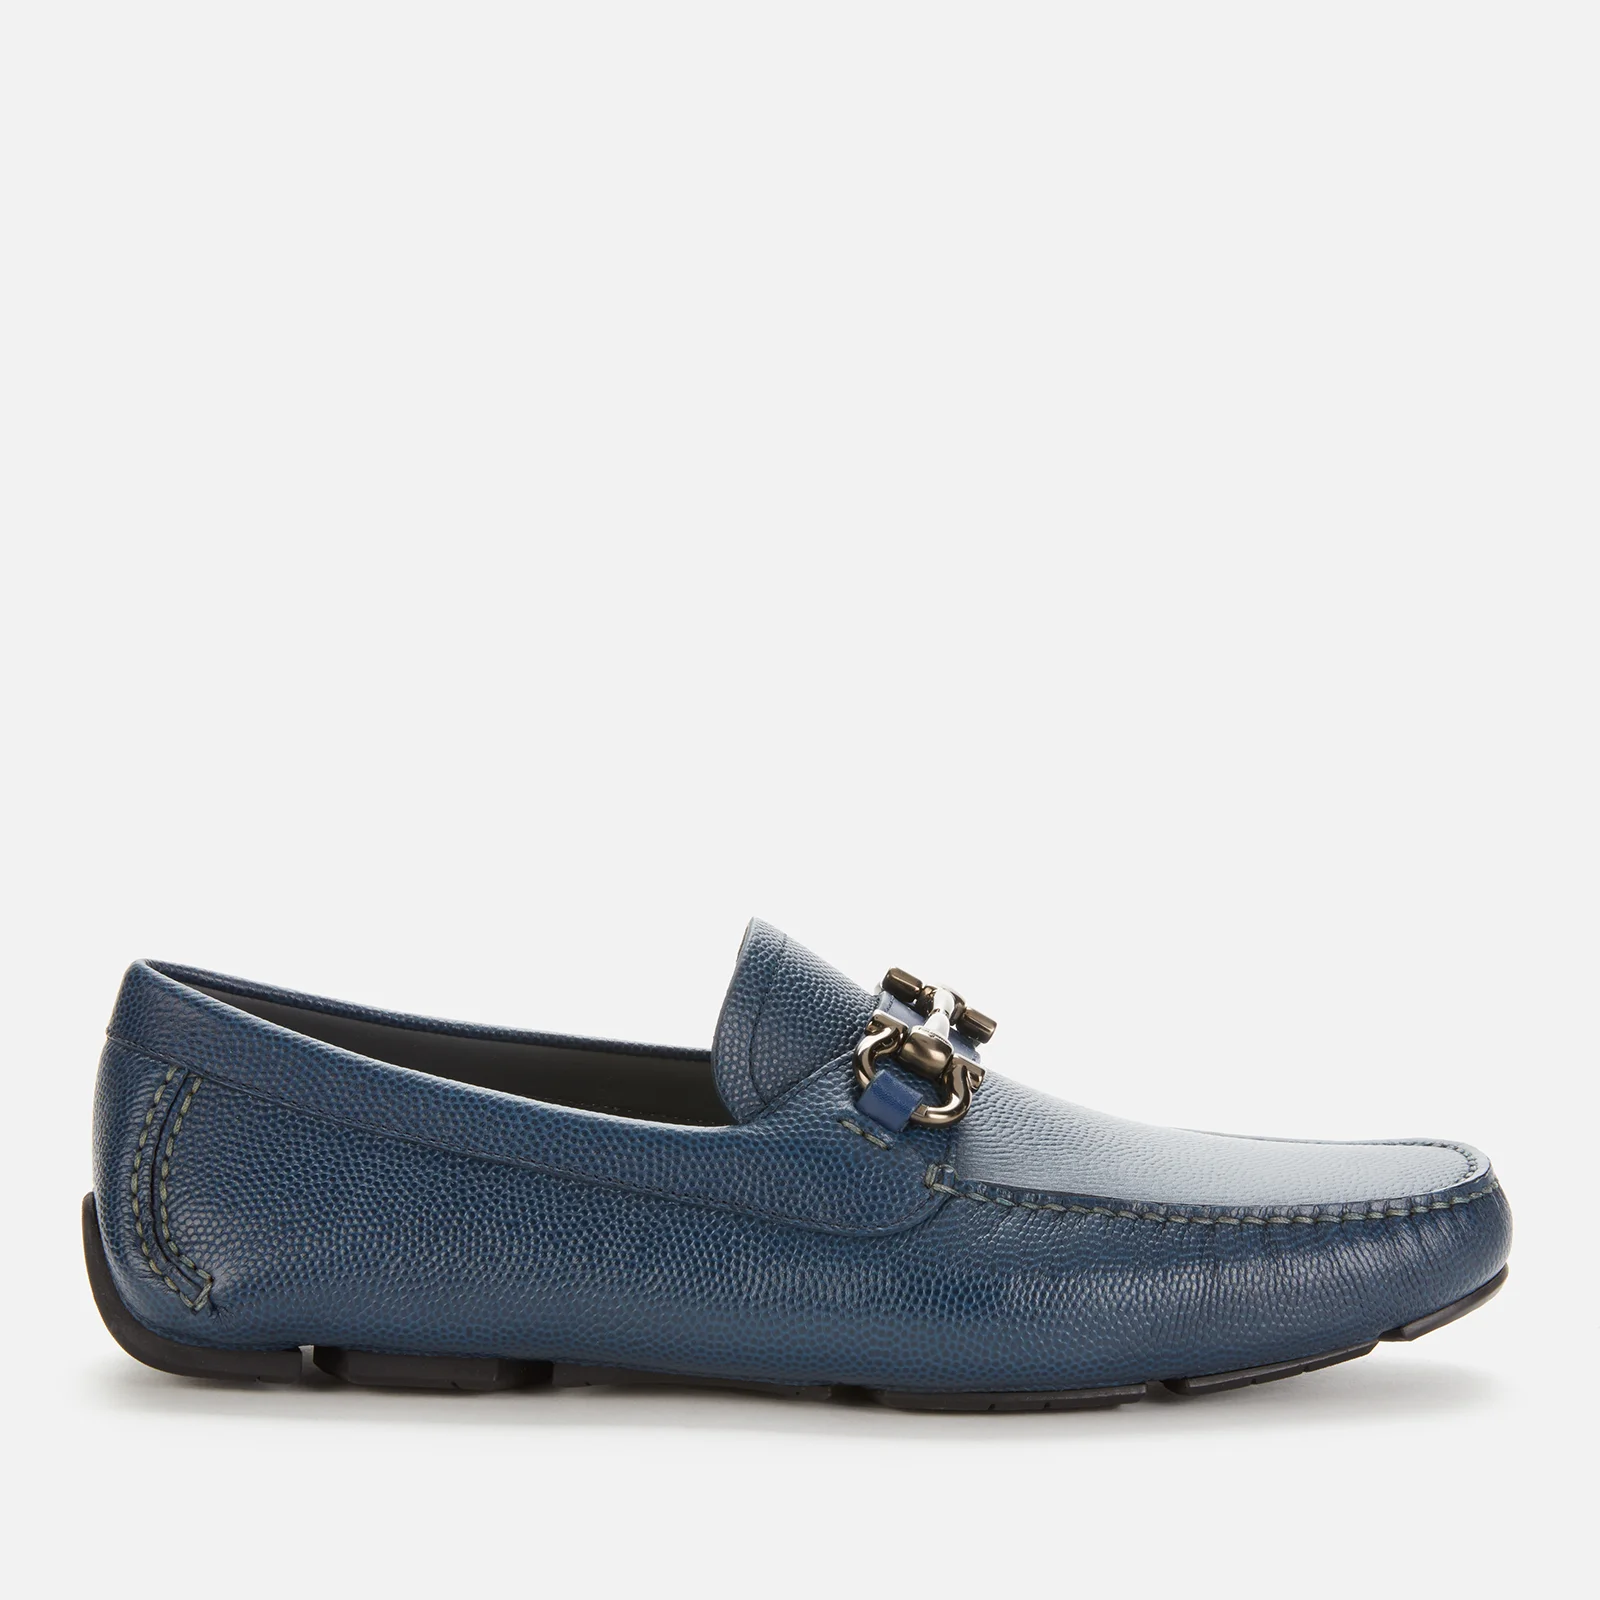 Salvatore Ferragamo Men's Parigi Leather Driving Shoes - Blue Image 1